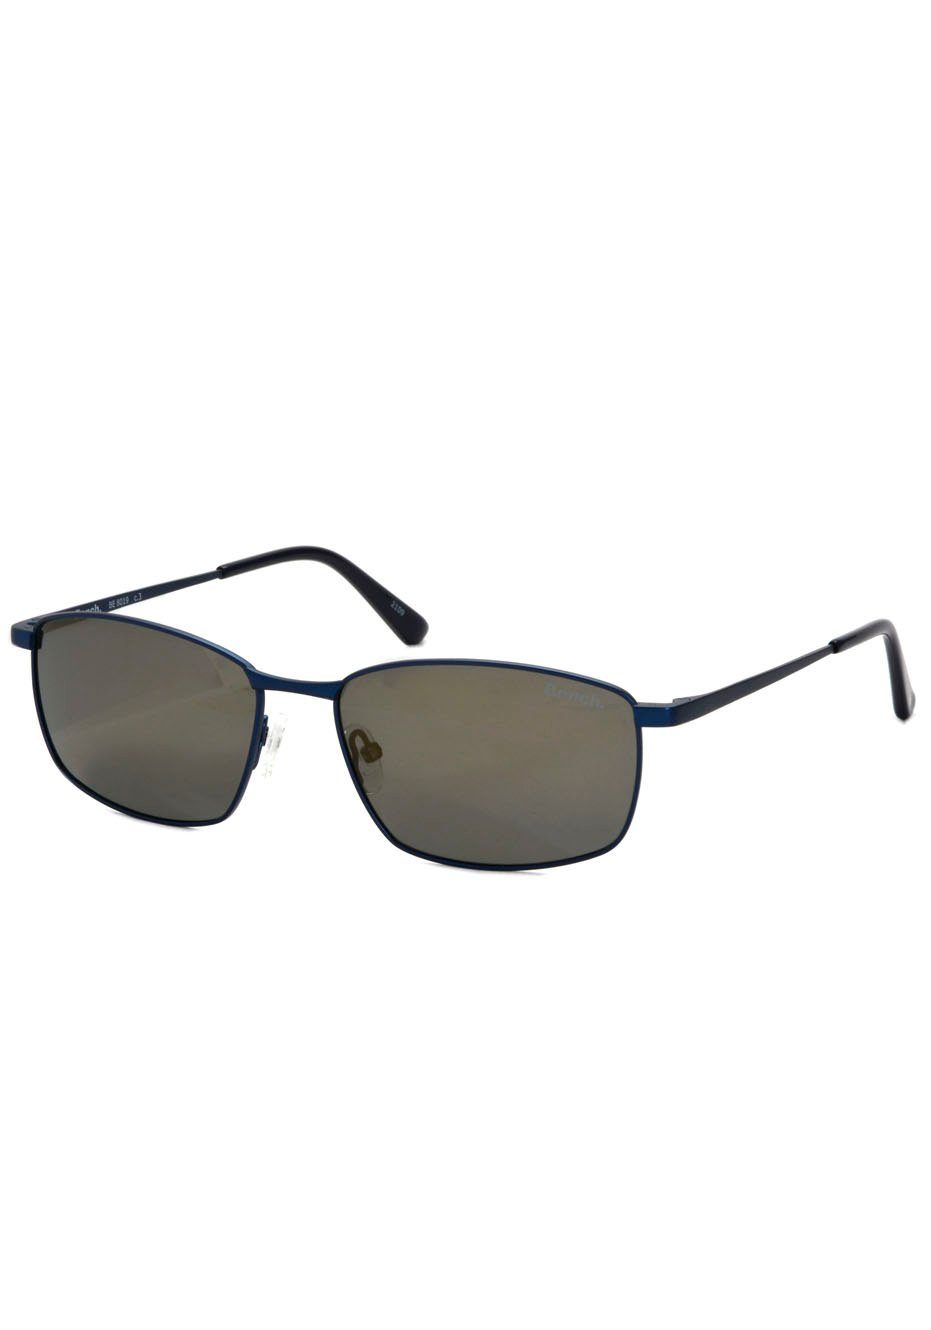 Bench. Sonnenbrille ultraleicht für höchste Ansprüche an Material-Qualität dunkelblau | Sonnenbrillen